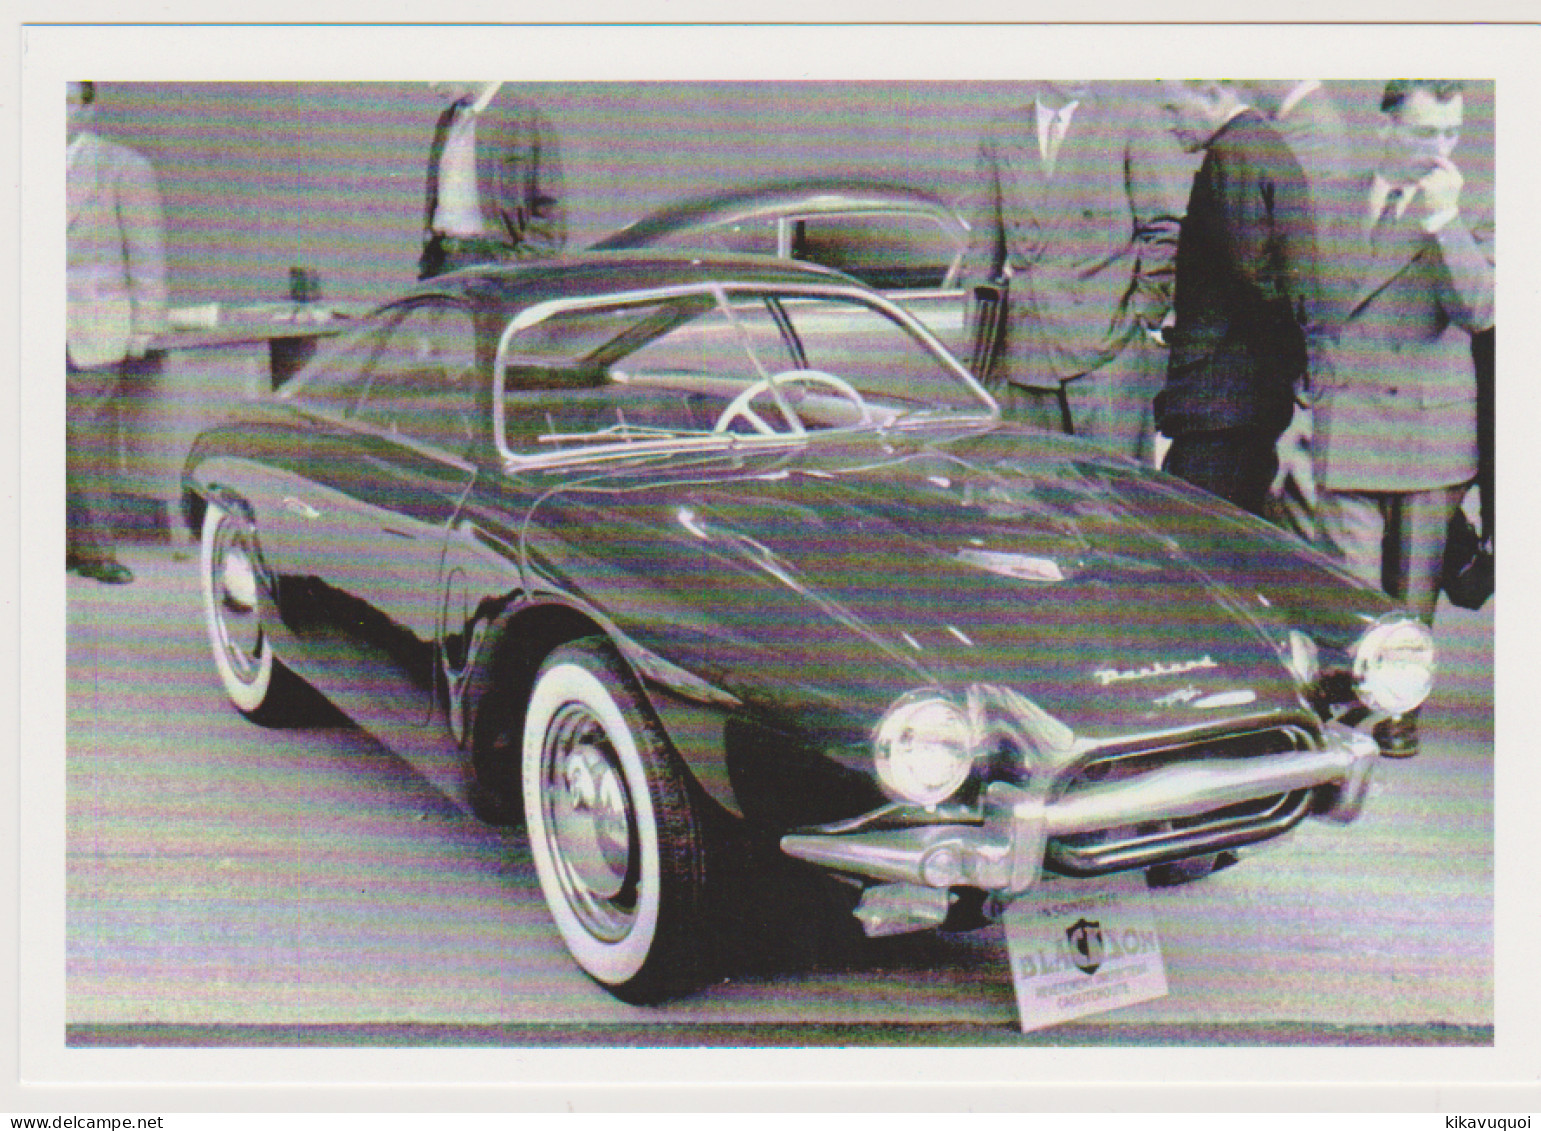 PANHARD DOLOMITE DE 1953 - CARTE POSTALE 10X15 CM NEUF - Motos